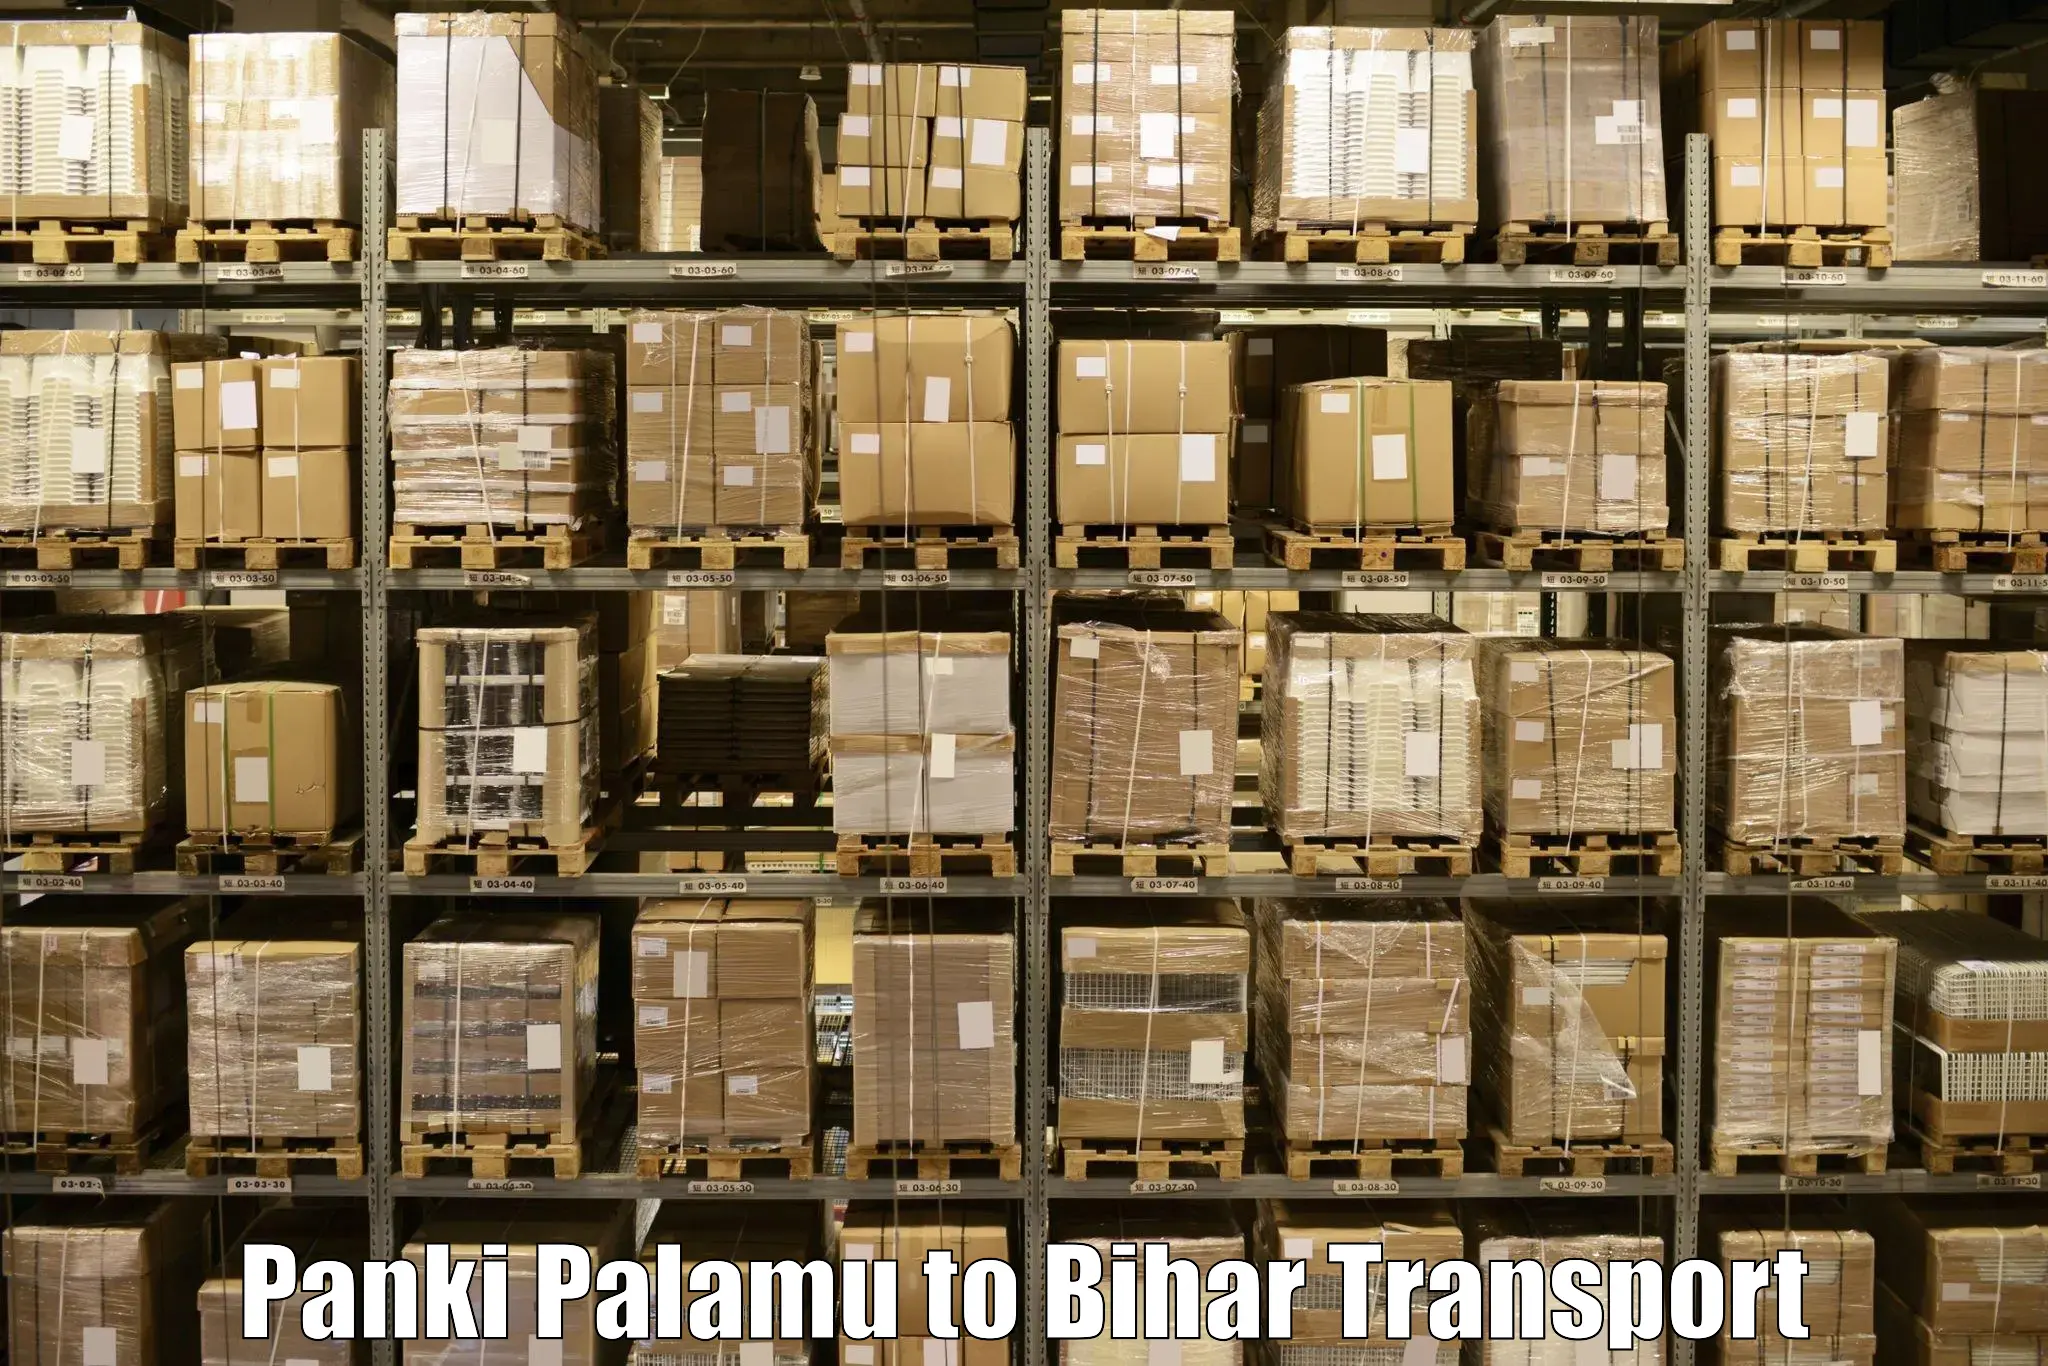 Nearby transport service Panki Palamu to Biraul